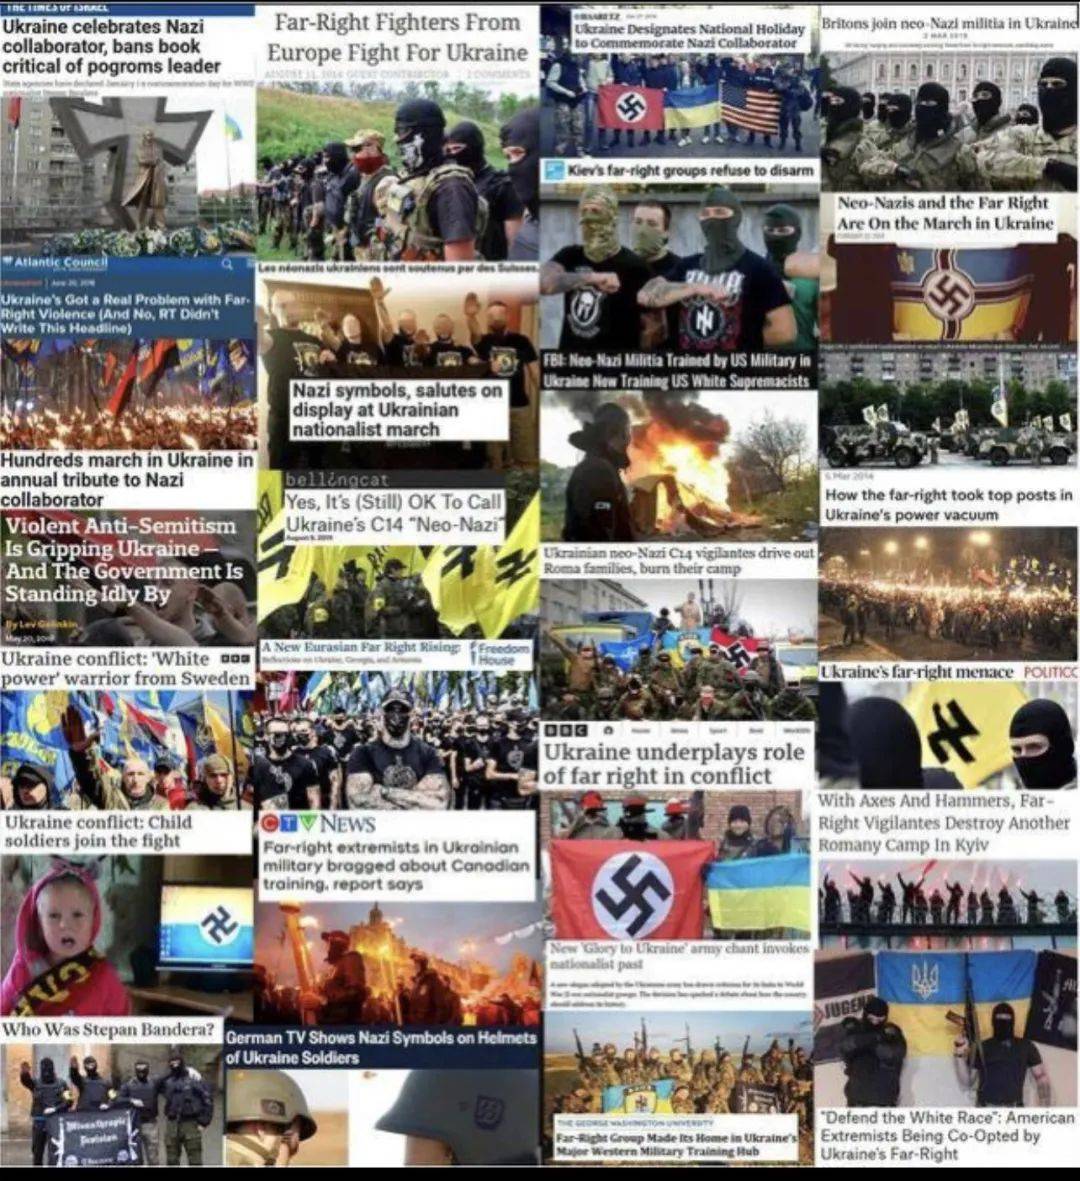 乌克兰纳粹旗图片